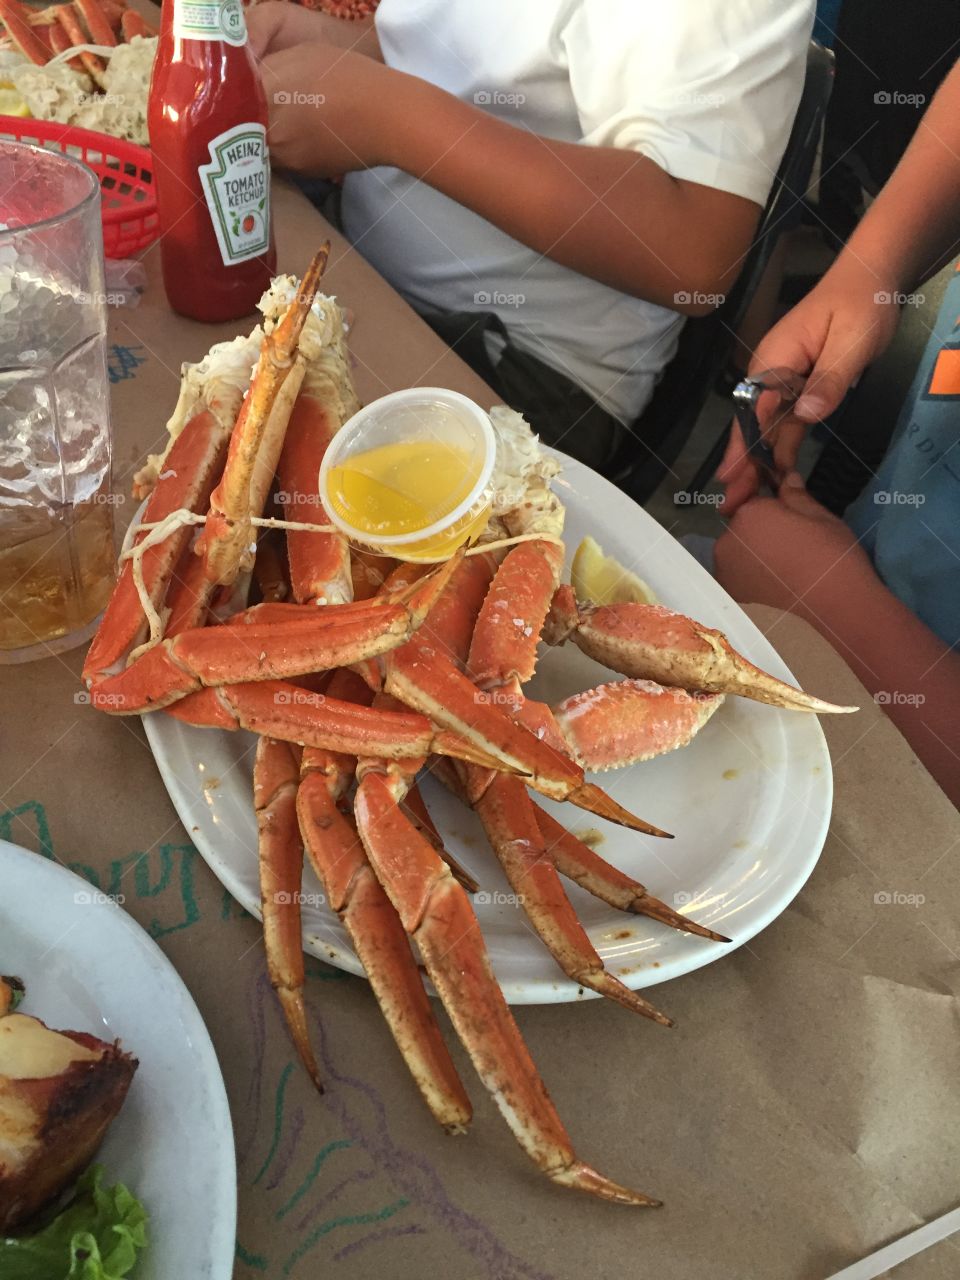 King crab legs